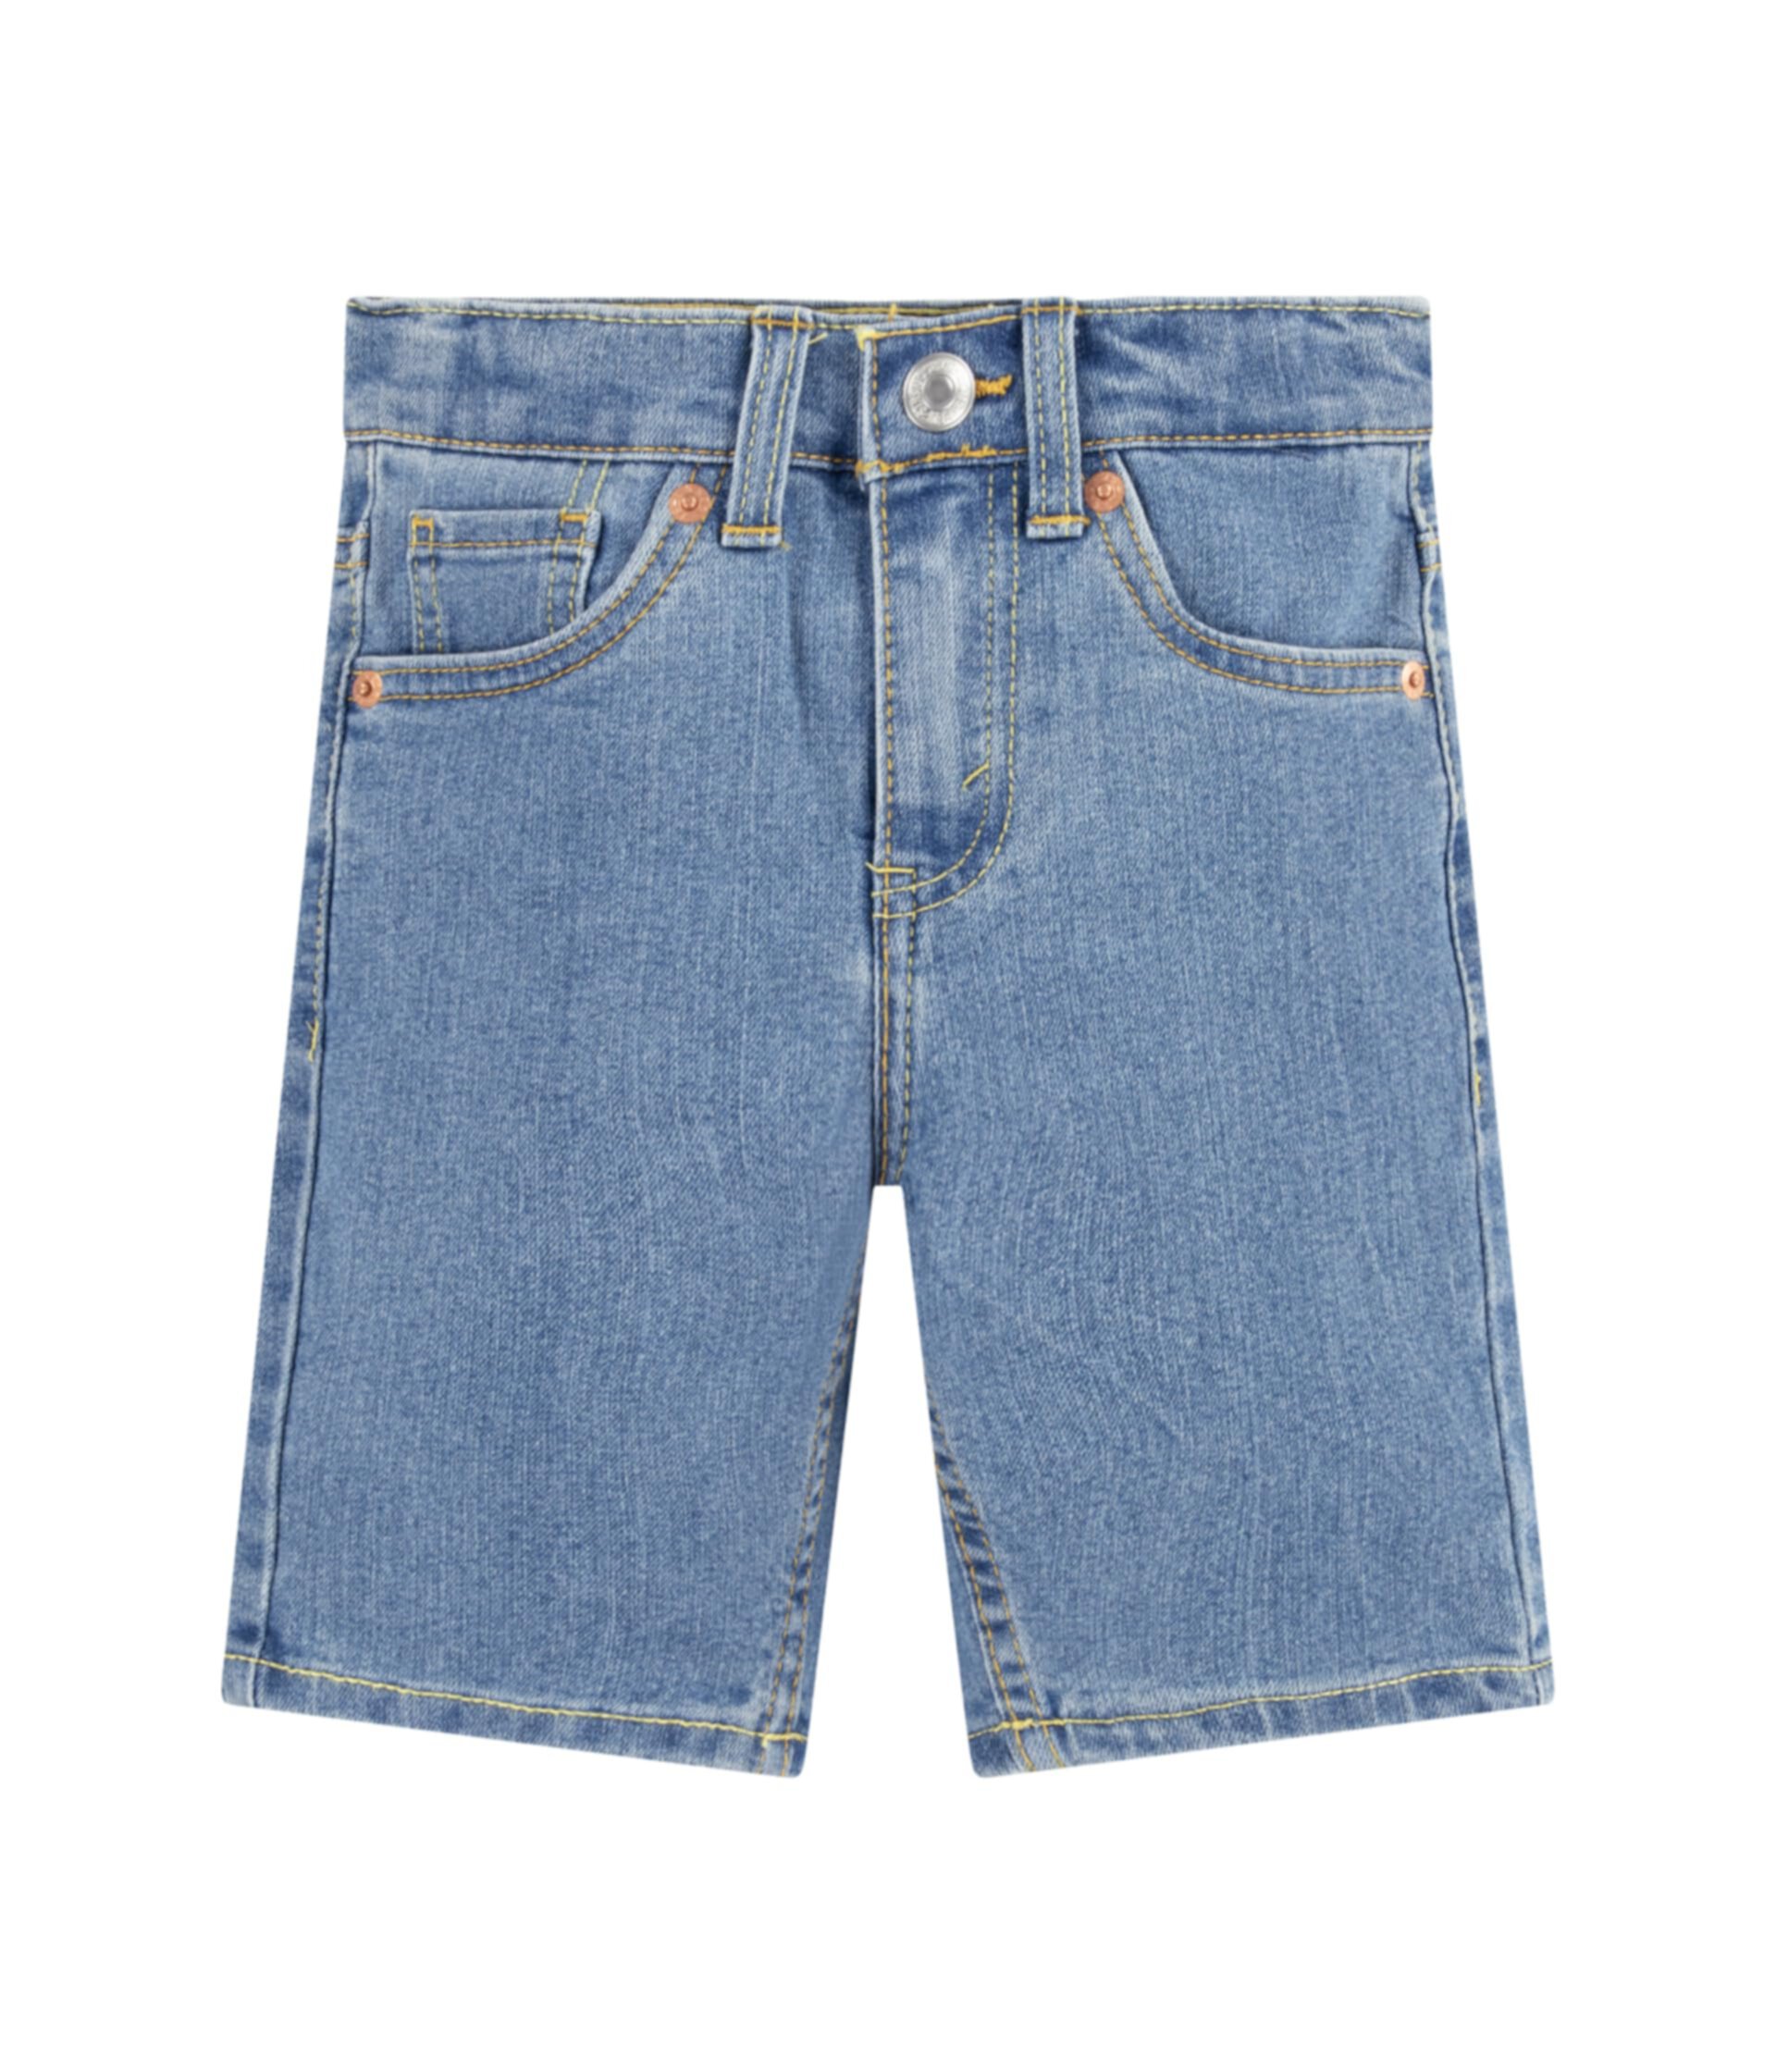 Классические джинсовые шорты узкого кроя (Little Kid) Levi's®